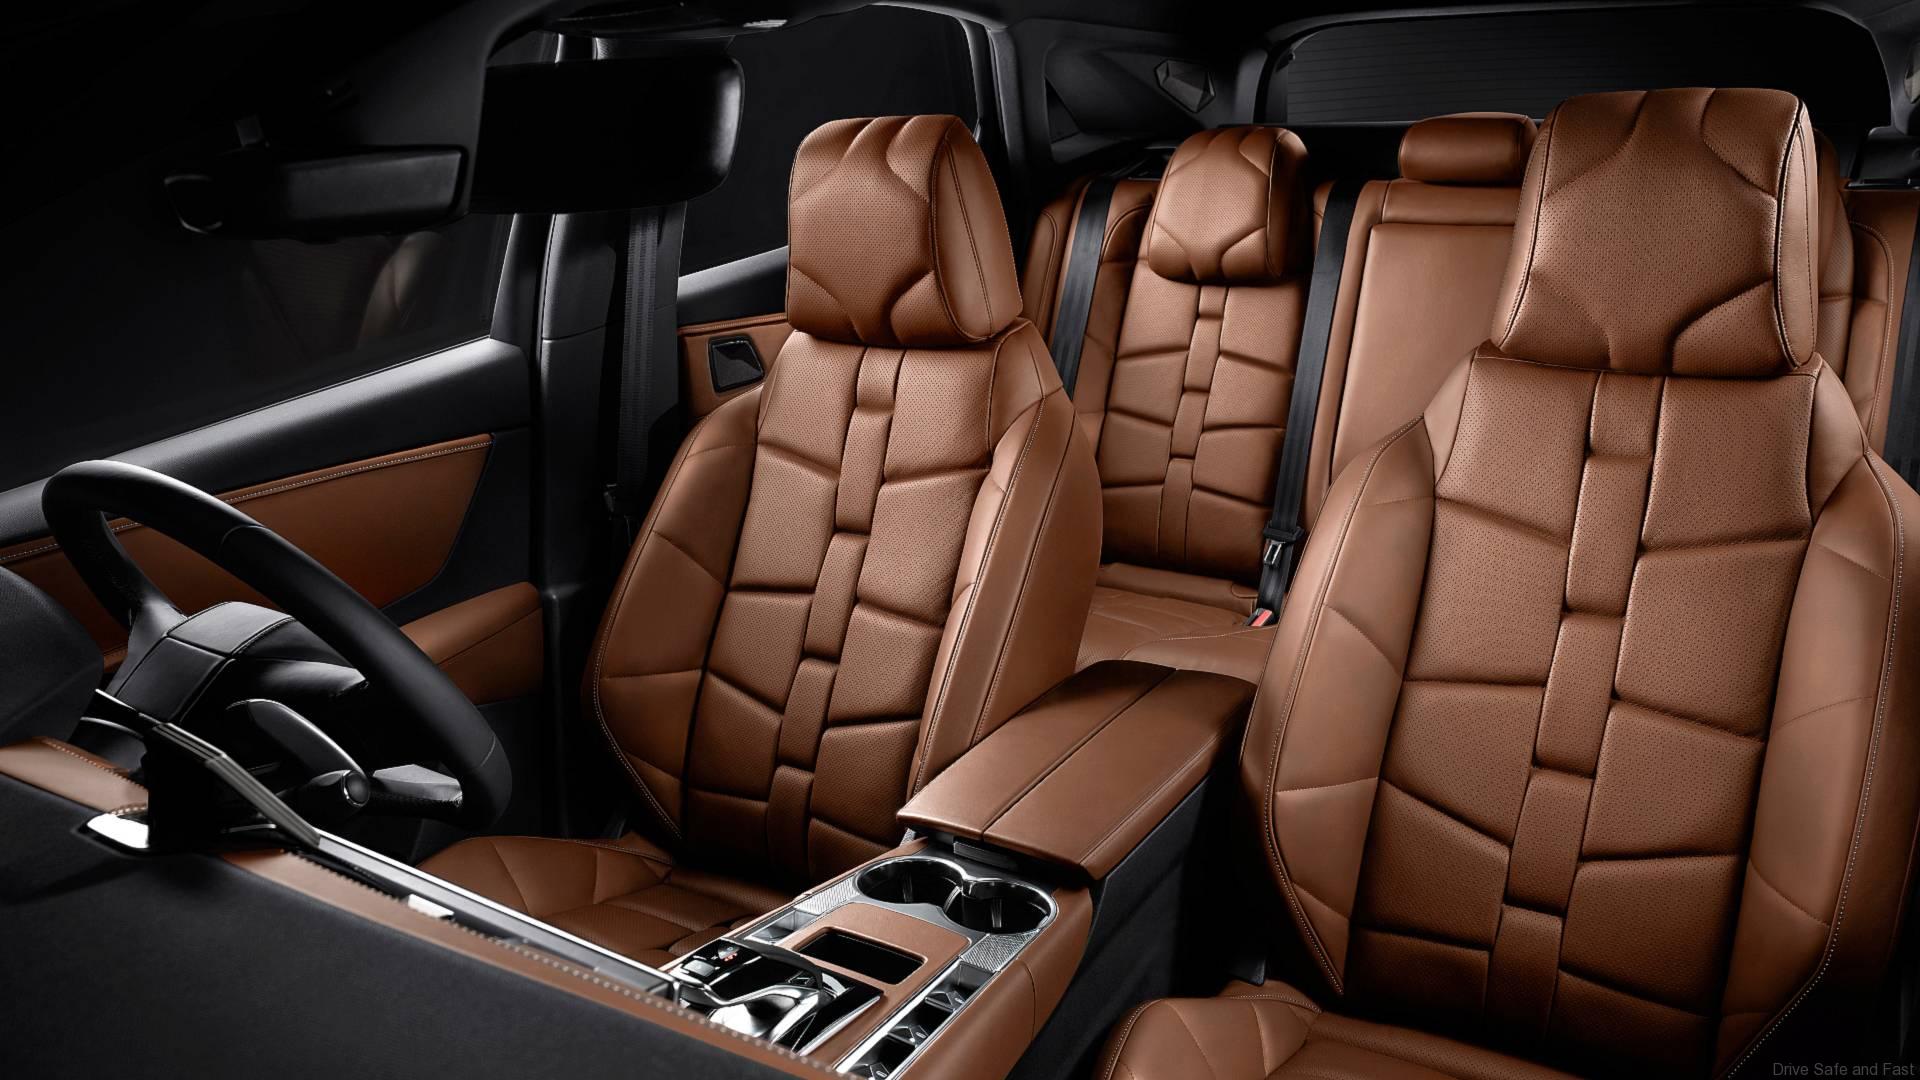 Citroen DS7 interior - Seats